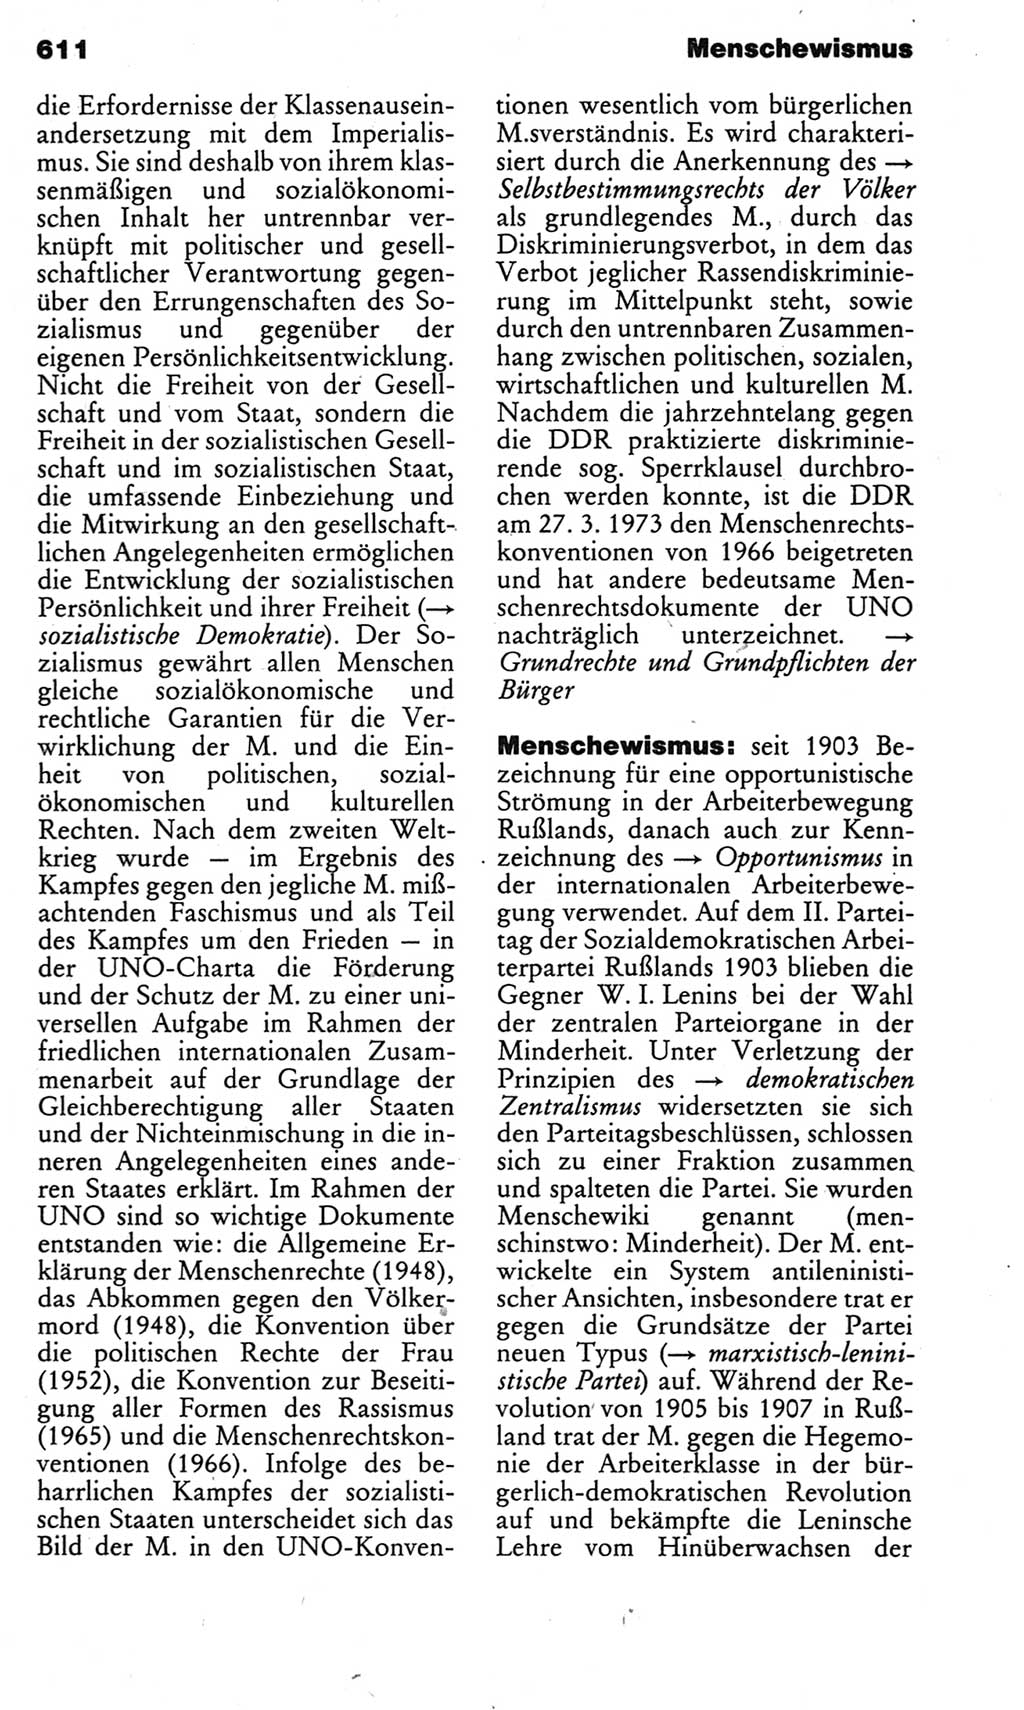 Kleines politisches Wörterbuch [Deutsche Demokratische Republik (DDR)] 1983, Seite 611 (Kl. pol. Wb. DDR 1983, S. 611)